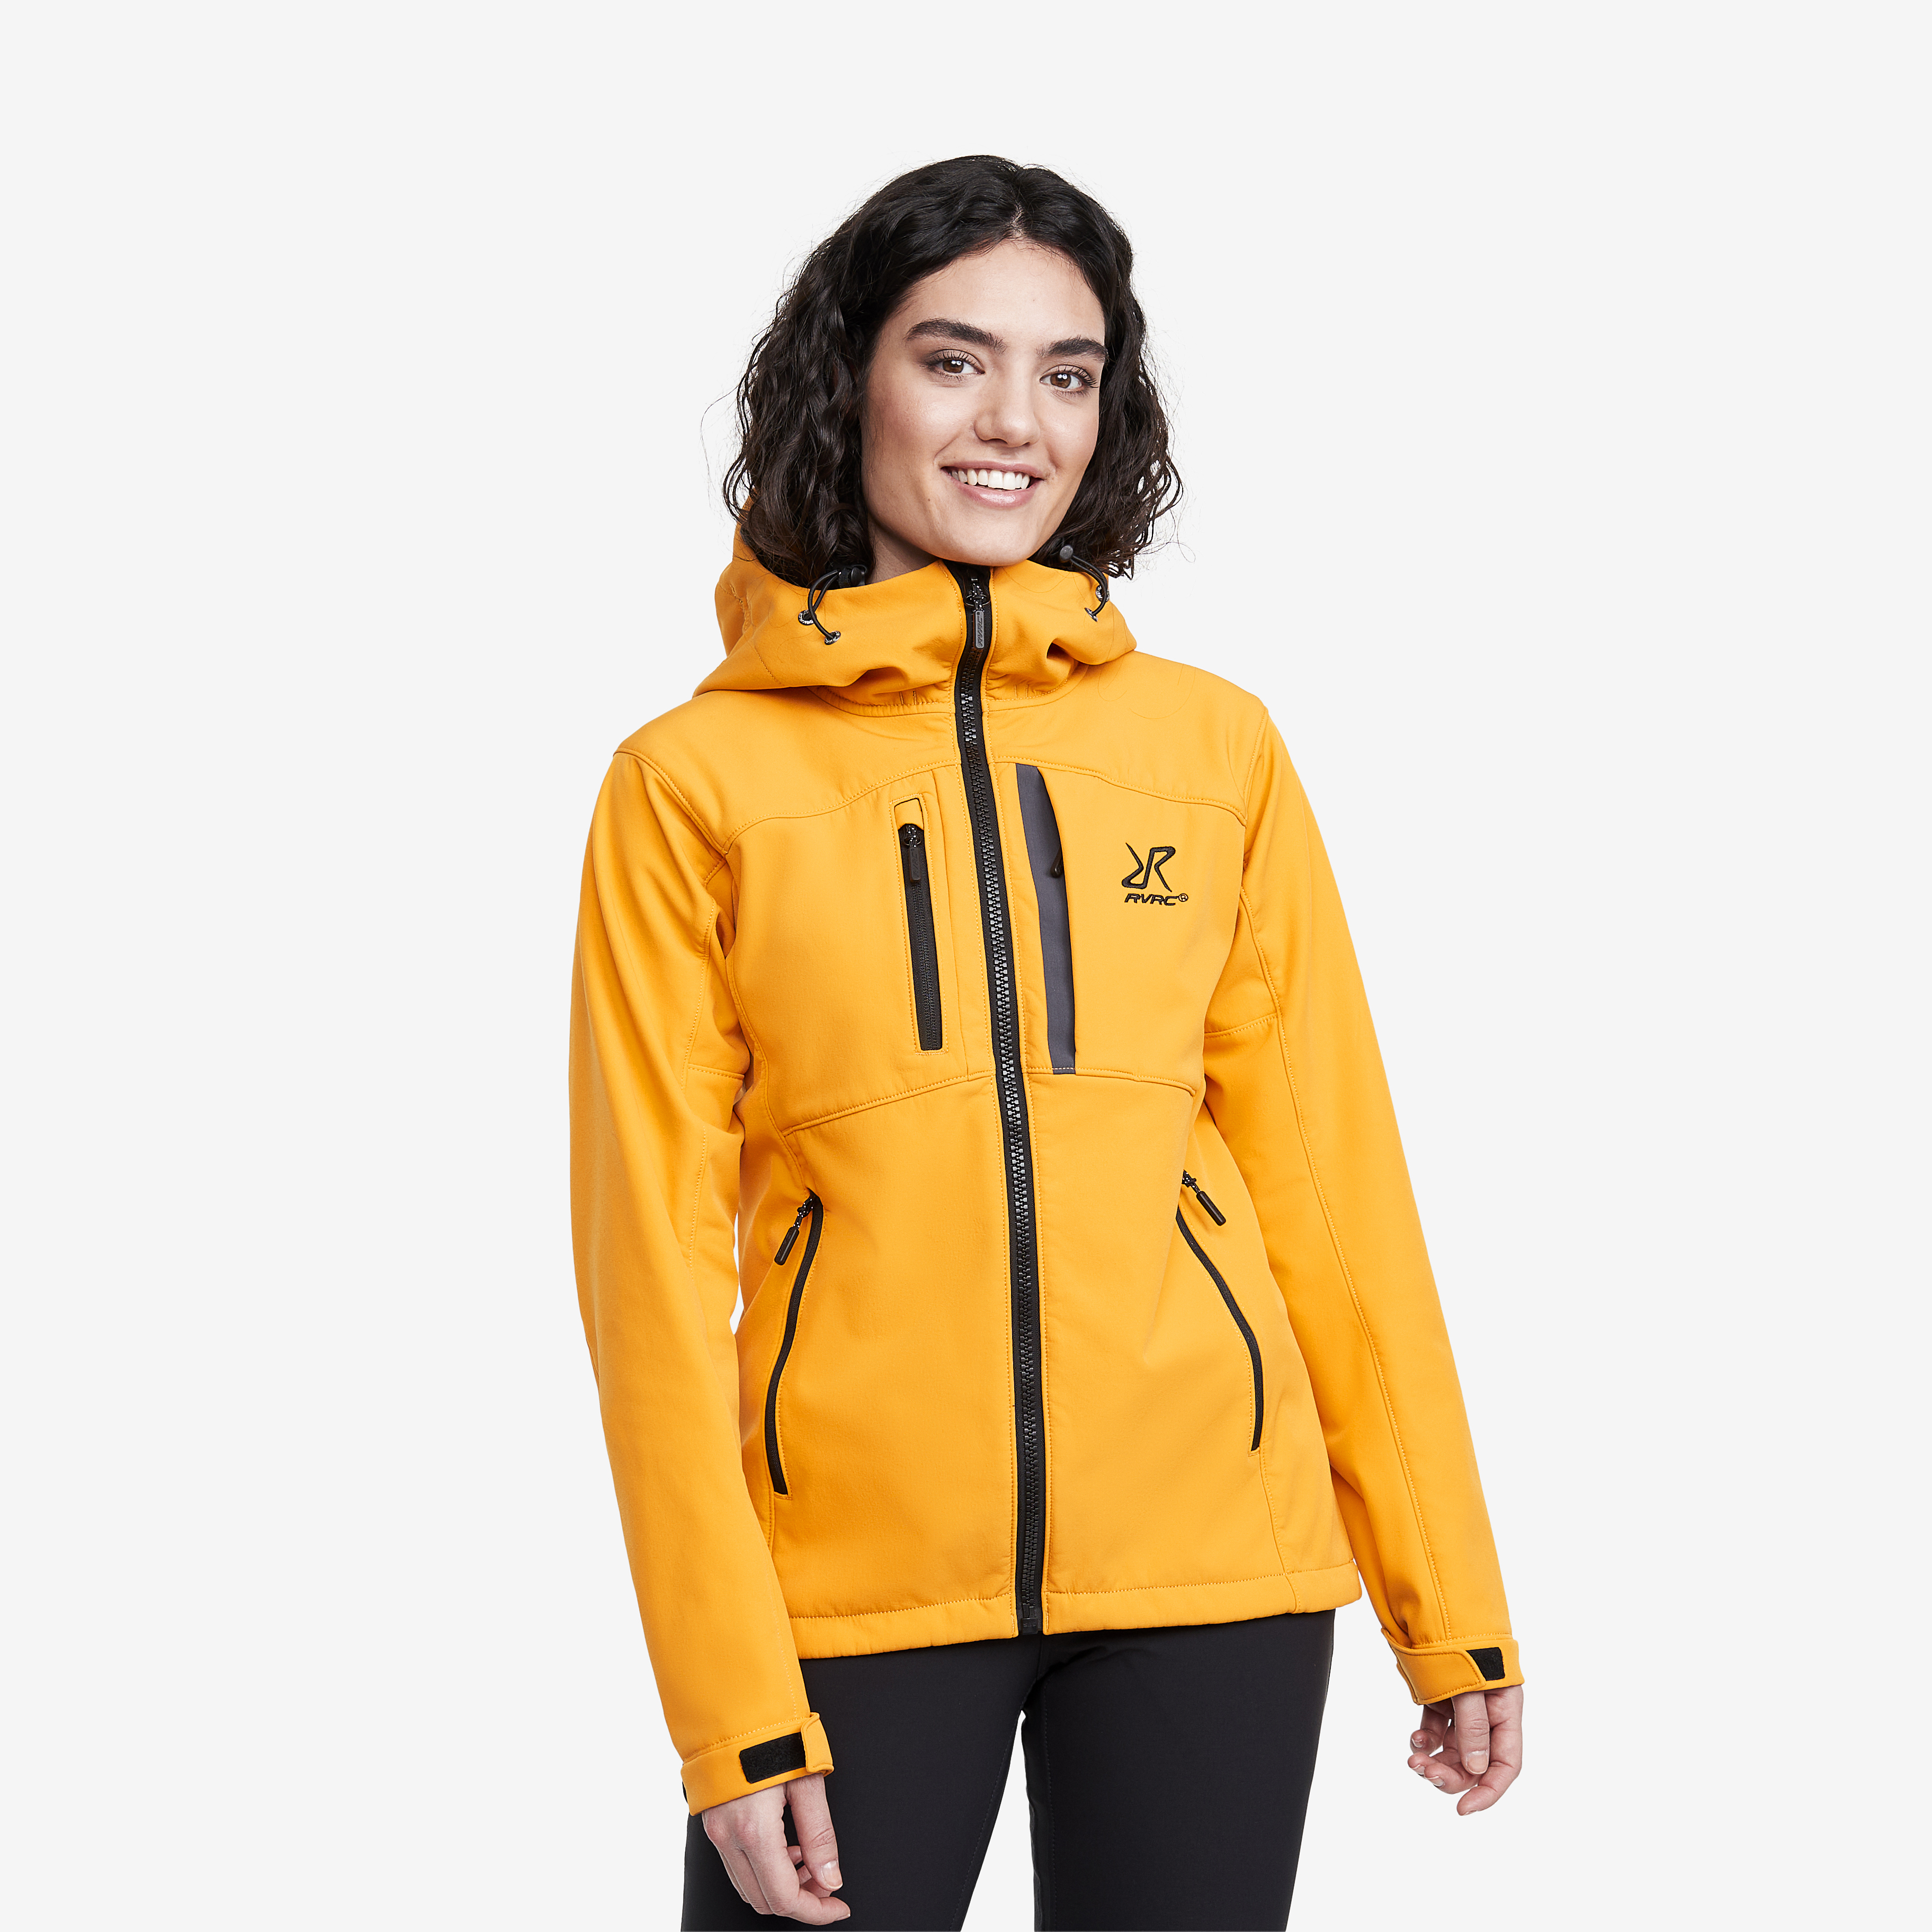 Hiball Jacket Radiant Yellow Women